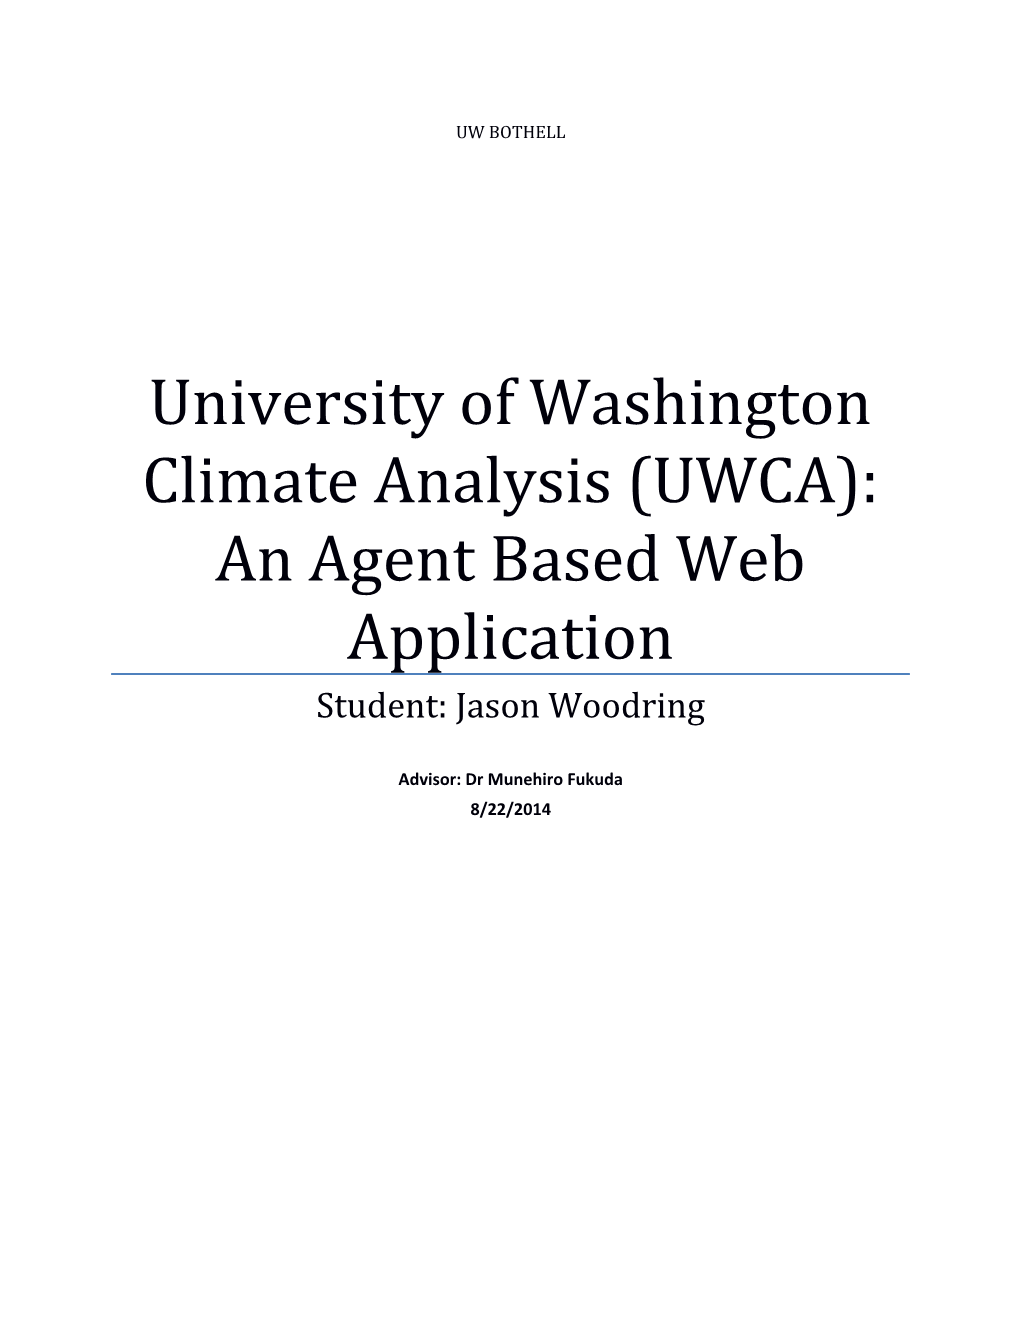 University of Washington Climate Analysis (UWCA): an Agent Based Web Application